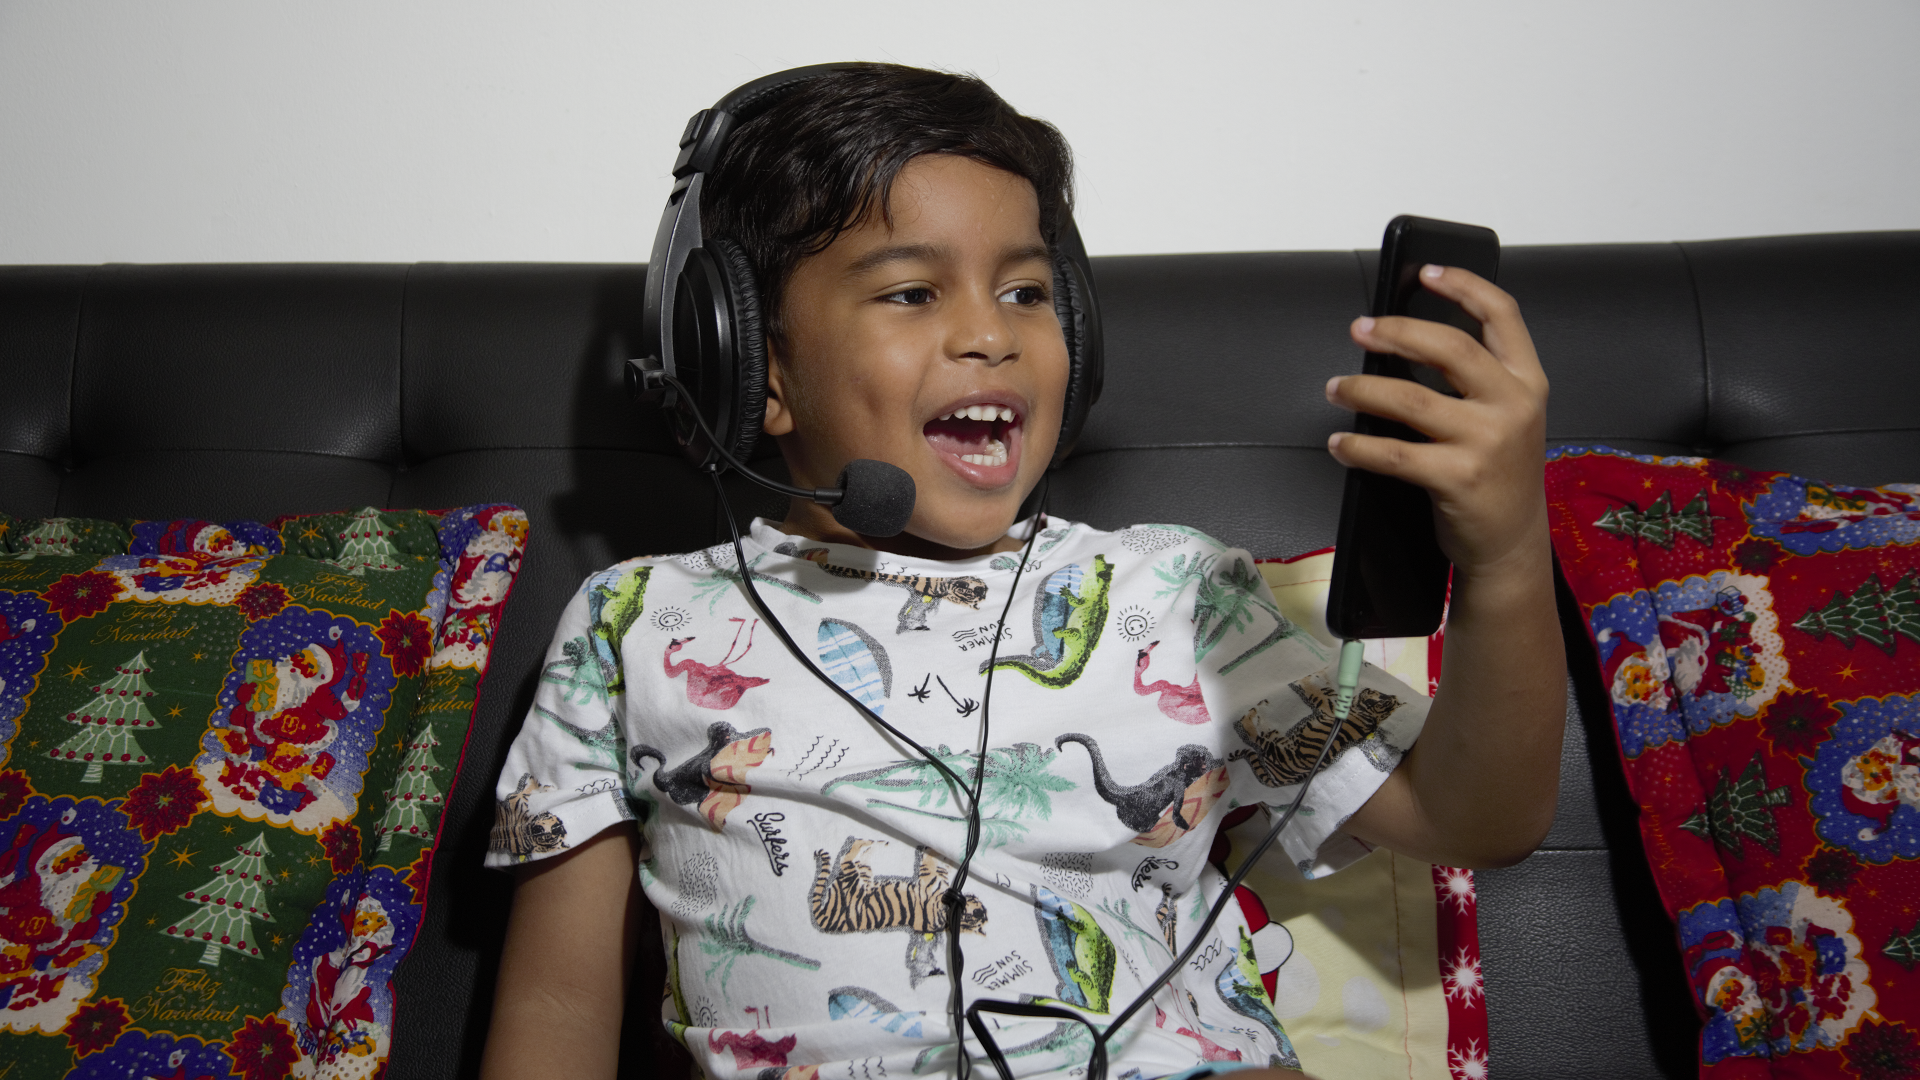 Fotografía: Niño sentado en un sofá usa audífonos de tipo diadema y habla frente a un celular